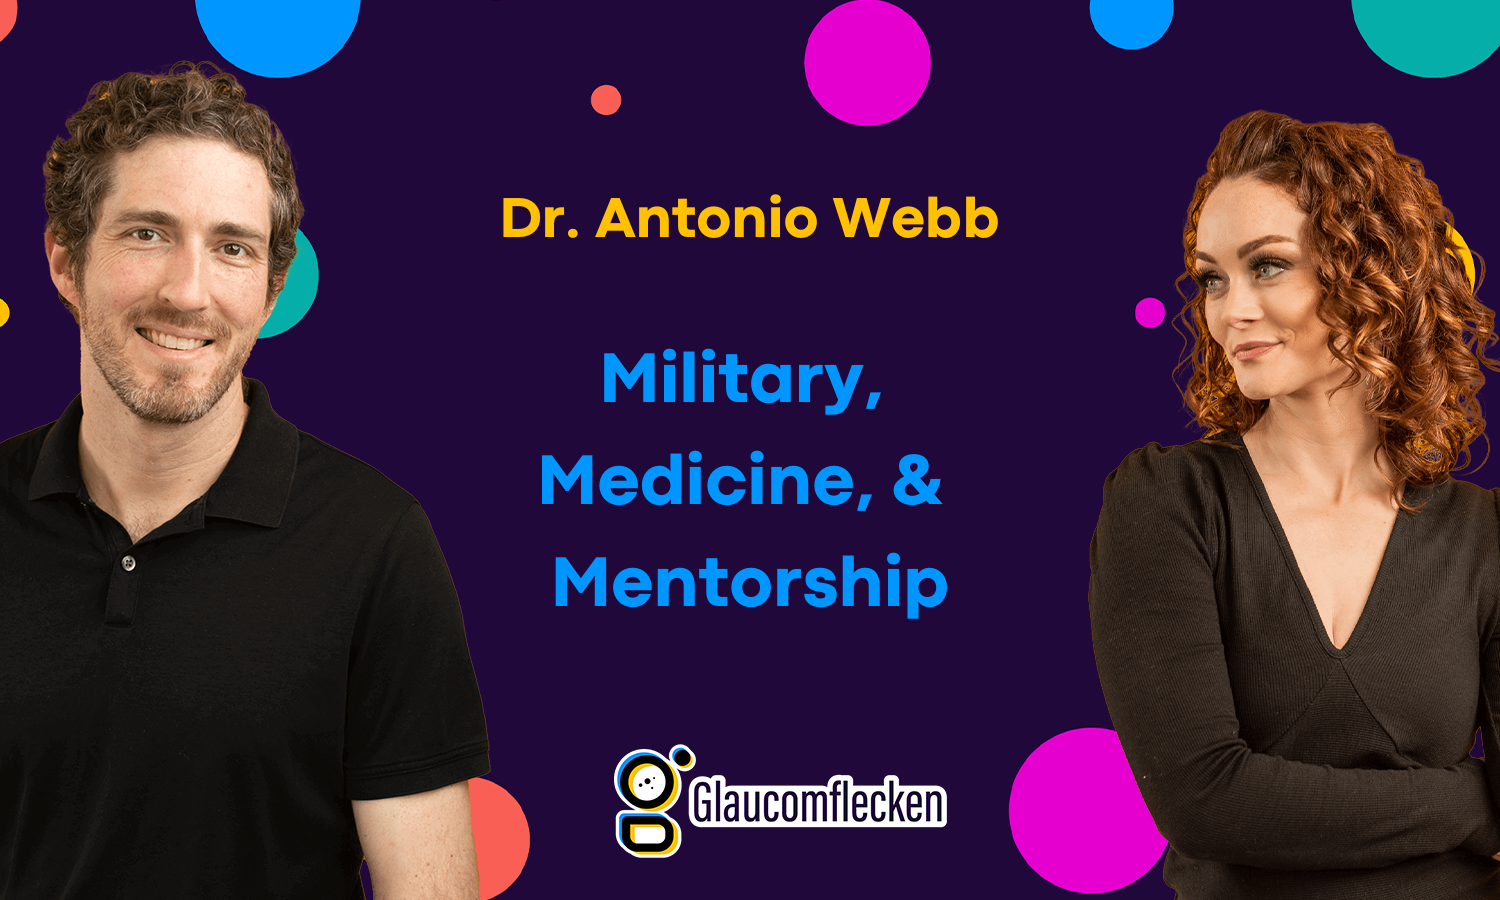 Dr. Antonio Webb: Military, Medicine, & Mentorship